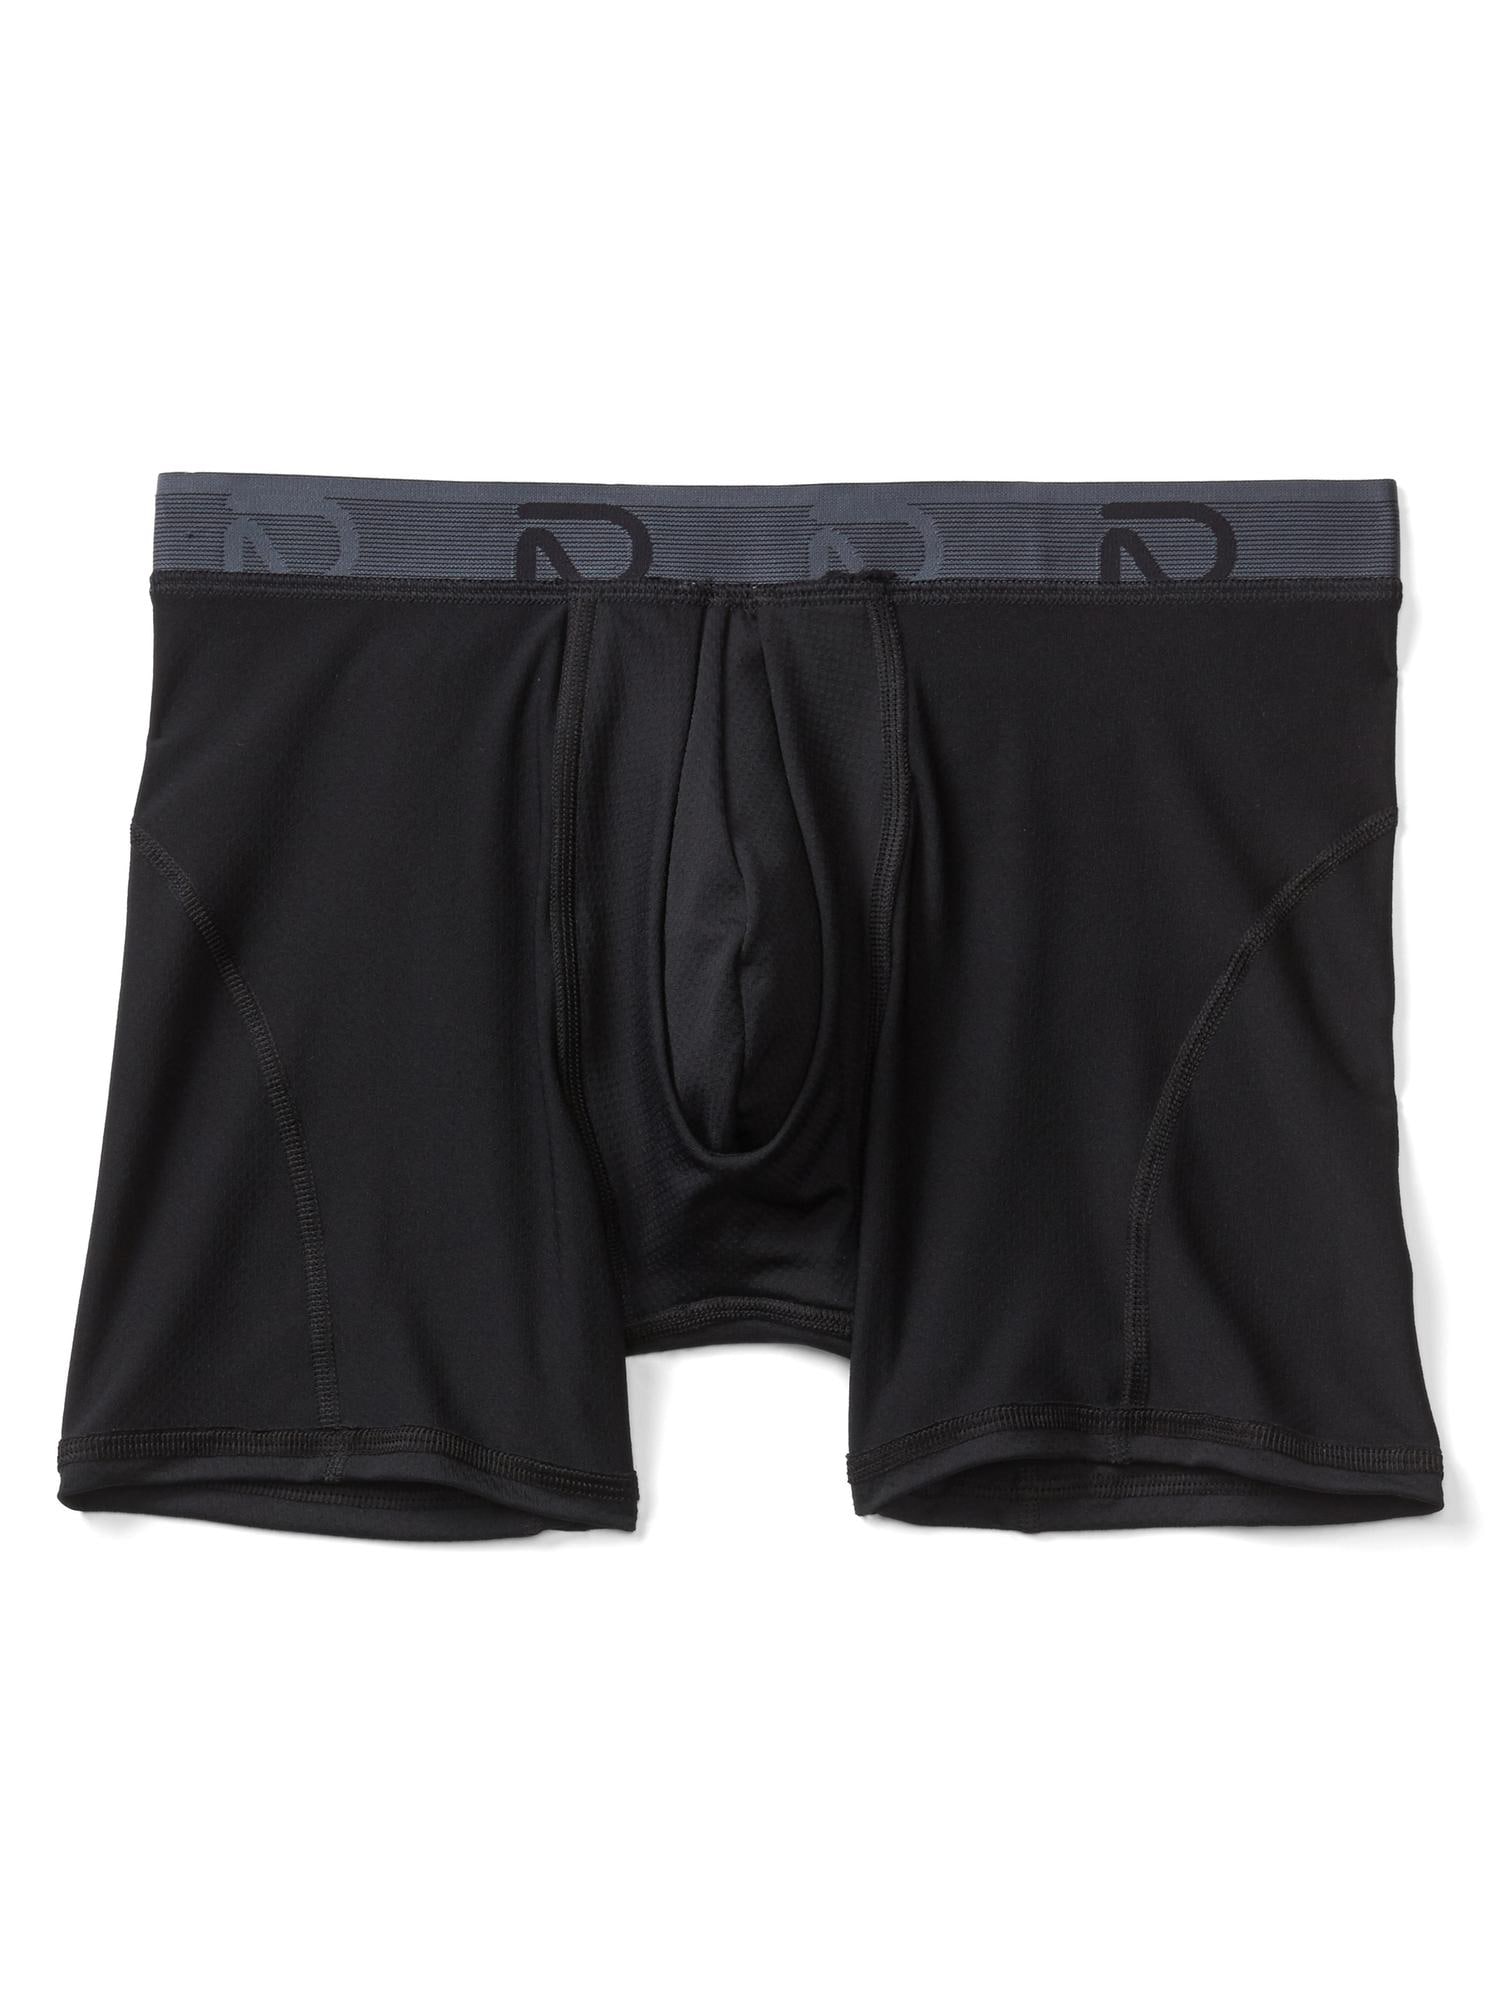 Men's Sweat Proof Boxer Shorts